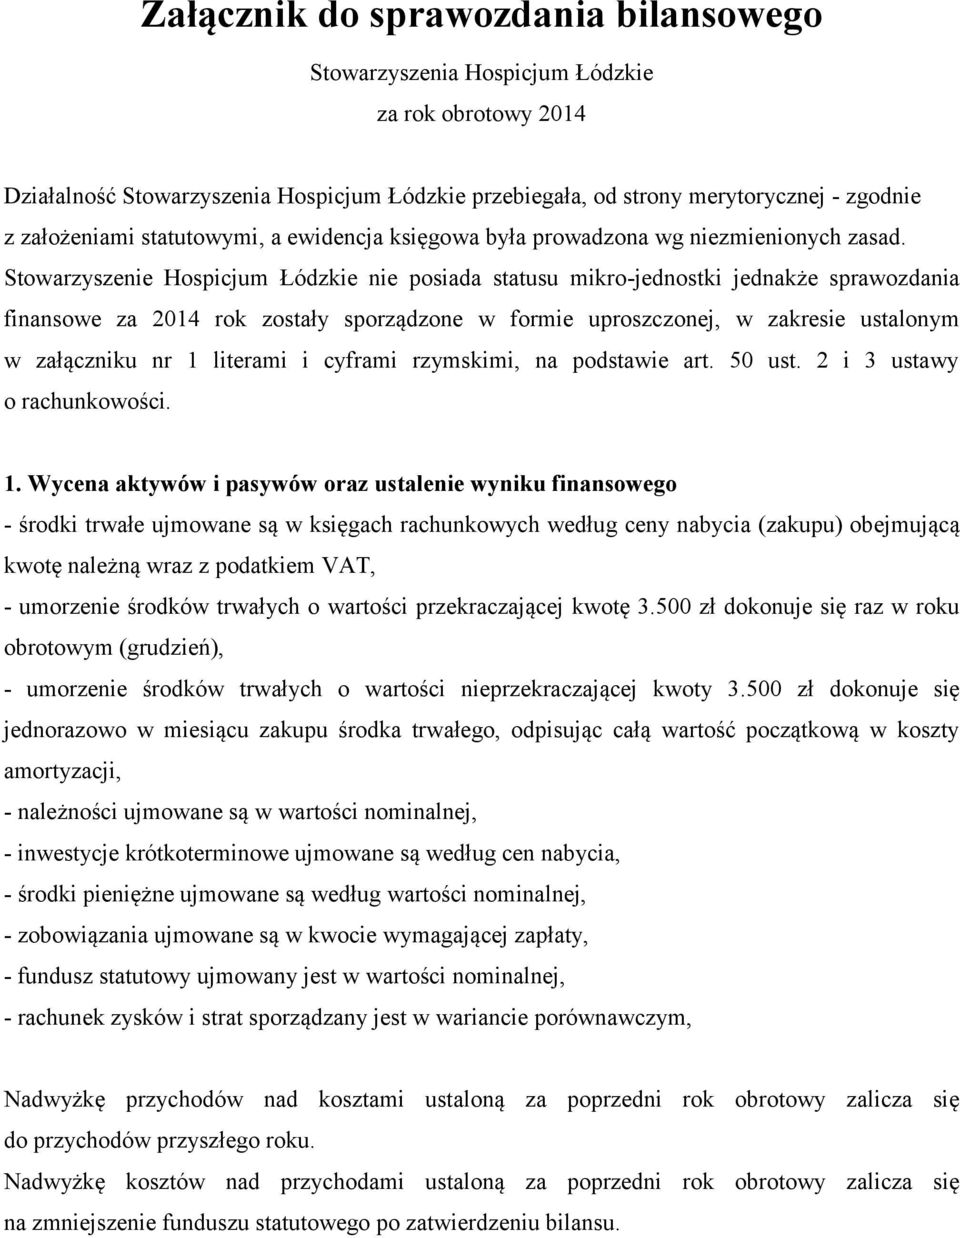 Stowarzyszenie Hospicjum Łódzkie nie posiada statusu mikro-jednostki jednakże sprawozdania finansowe za 2014 rok zostały sporządzone w formie uproszczonej, w zakresie ustalonym w załączniku nr 1